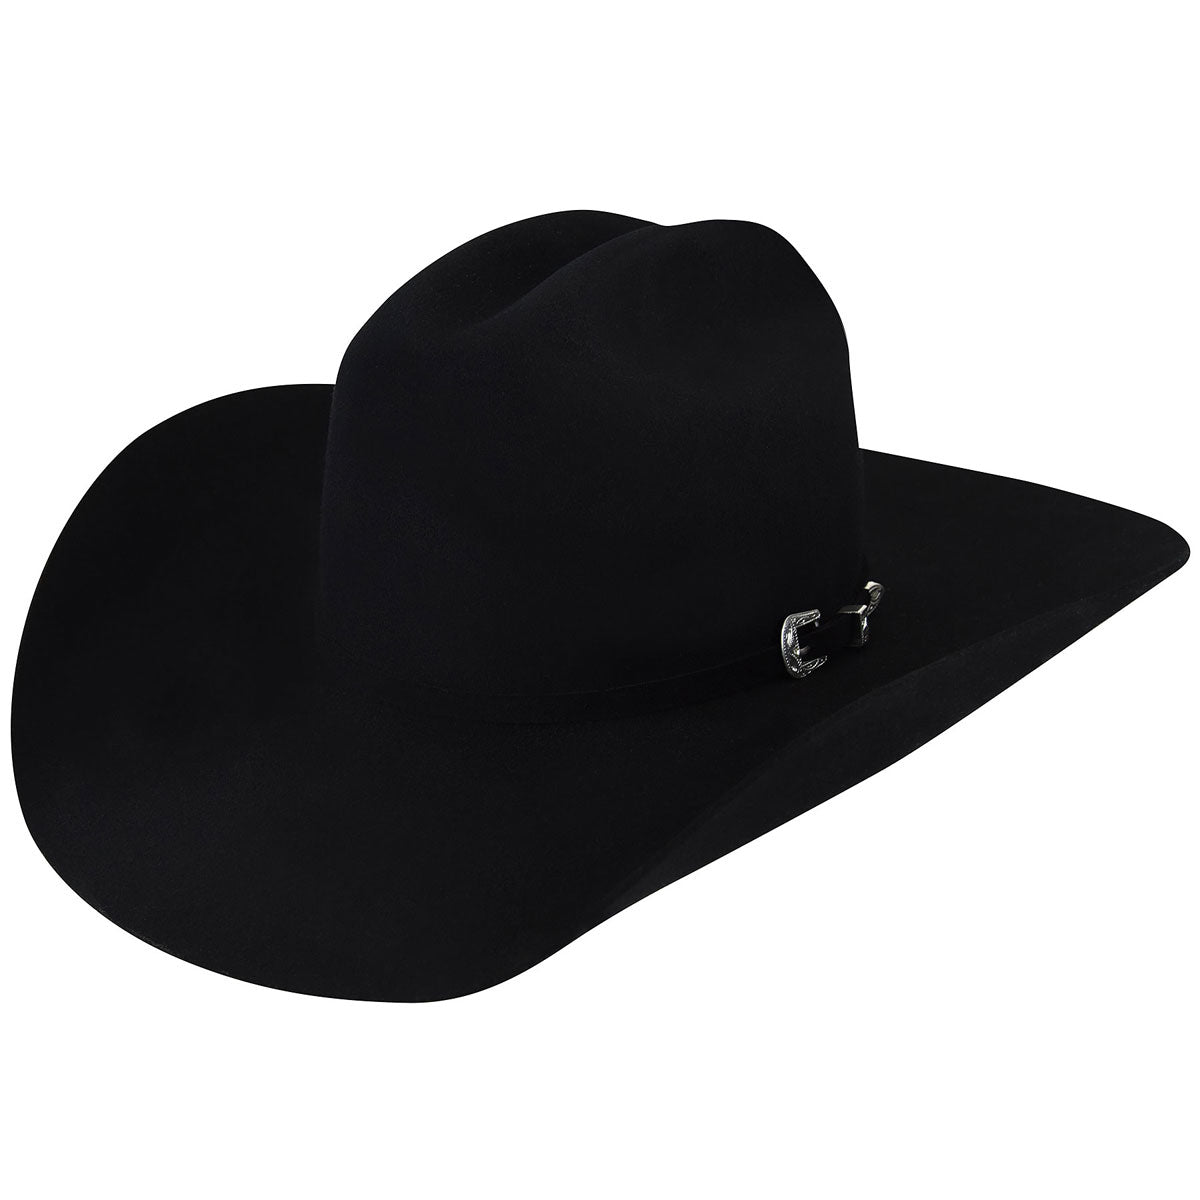 Bailey® 4X Black McQ Wool Blend Felt Cowboy Hat